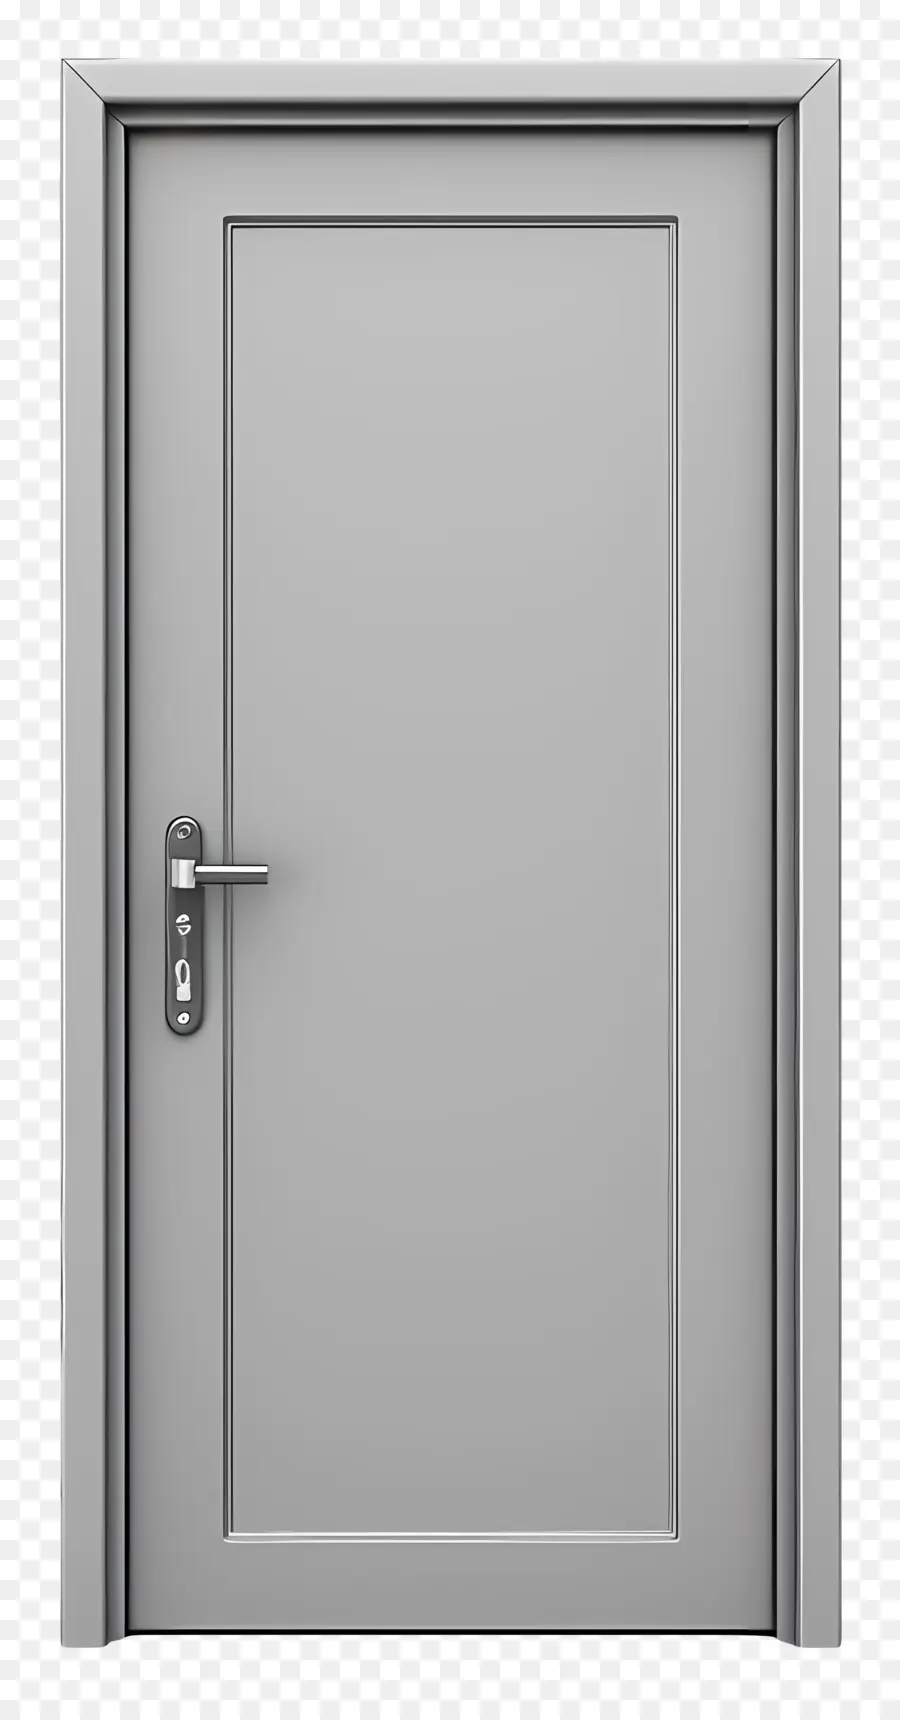 metal door frame open door gray background closed door minimalist design